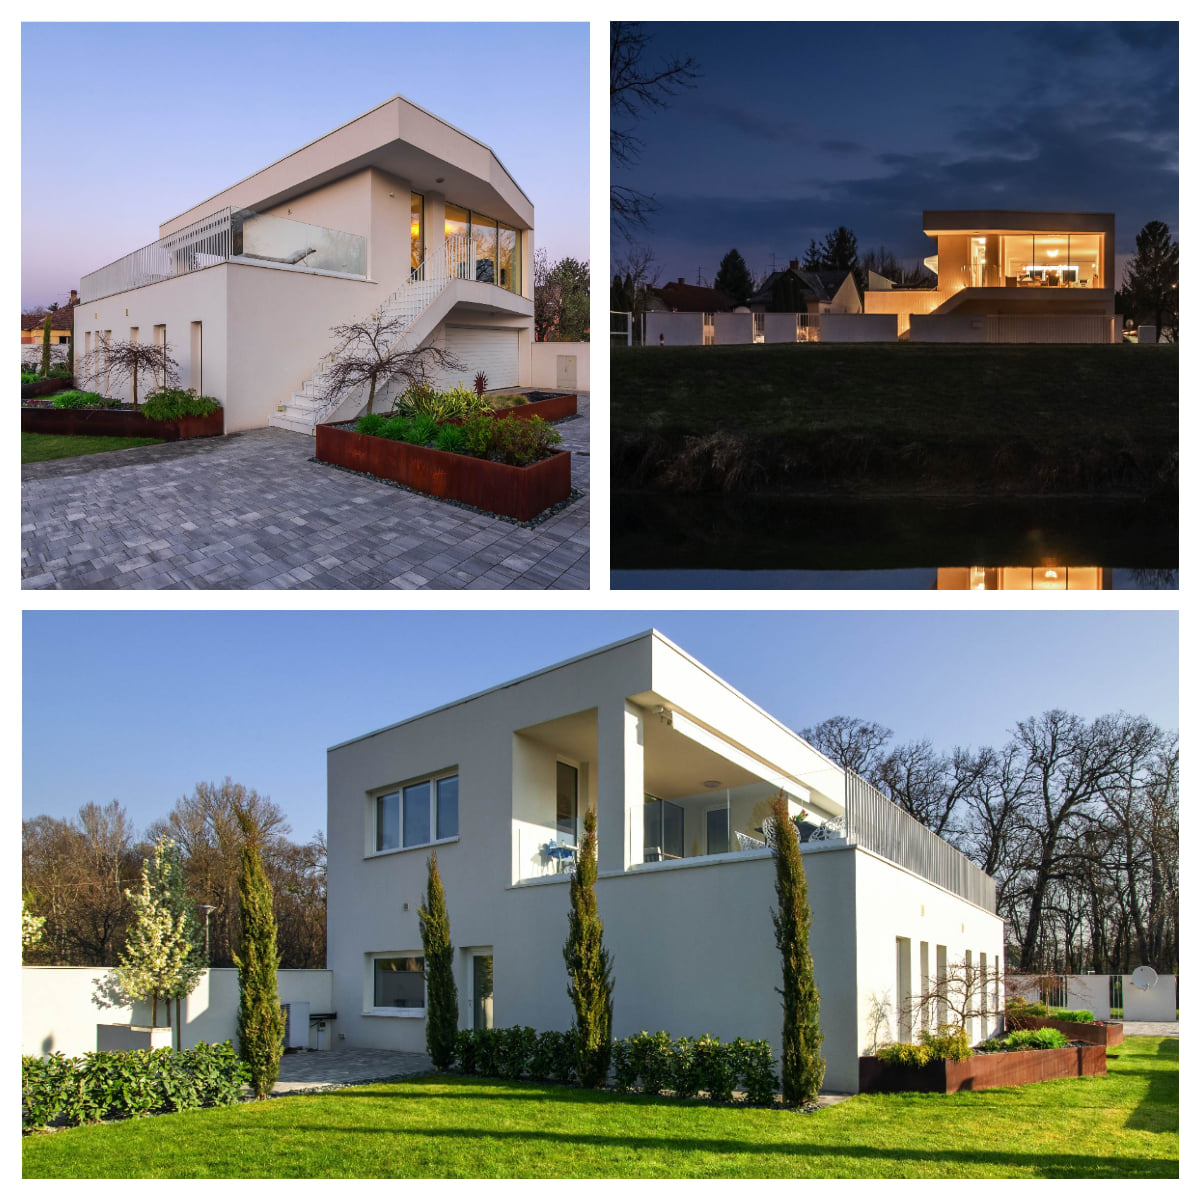 Az Év háza pályázat hivatalos facebook oldala-Családi ház, lakóépület kategória közönségszavazásának nyertes épülete, Németh Dávid és Csaplár György által tervezett épület.